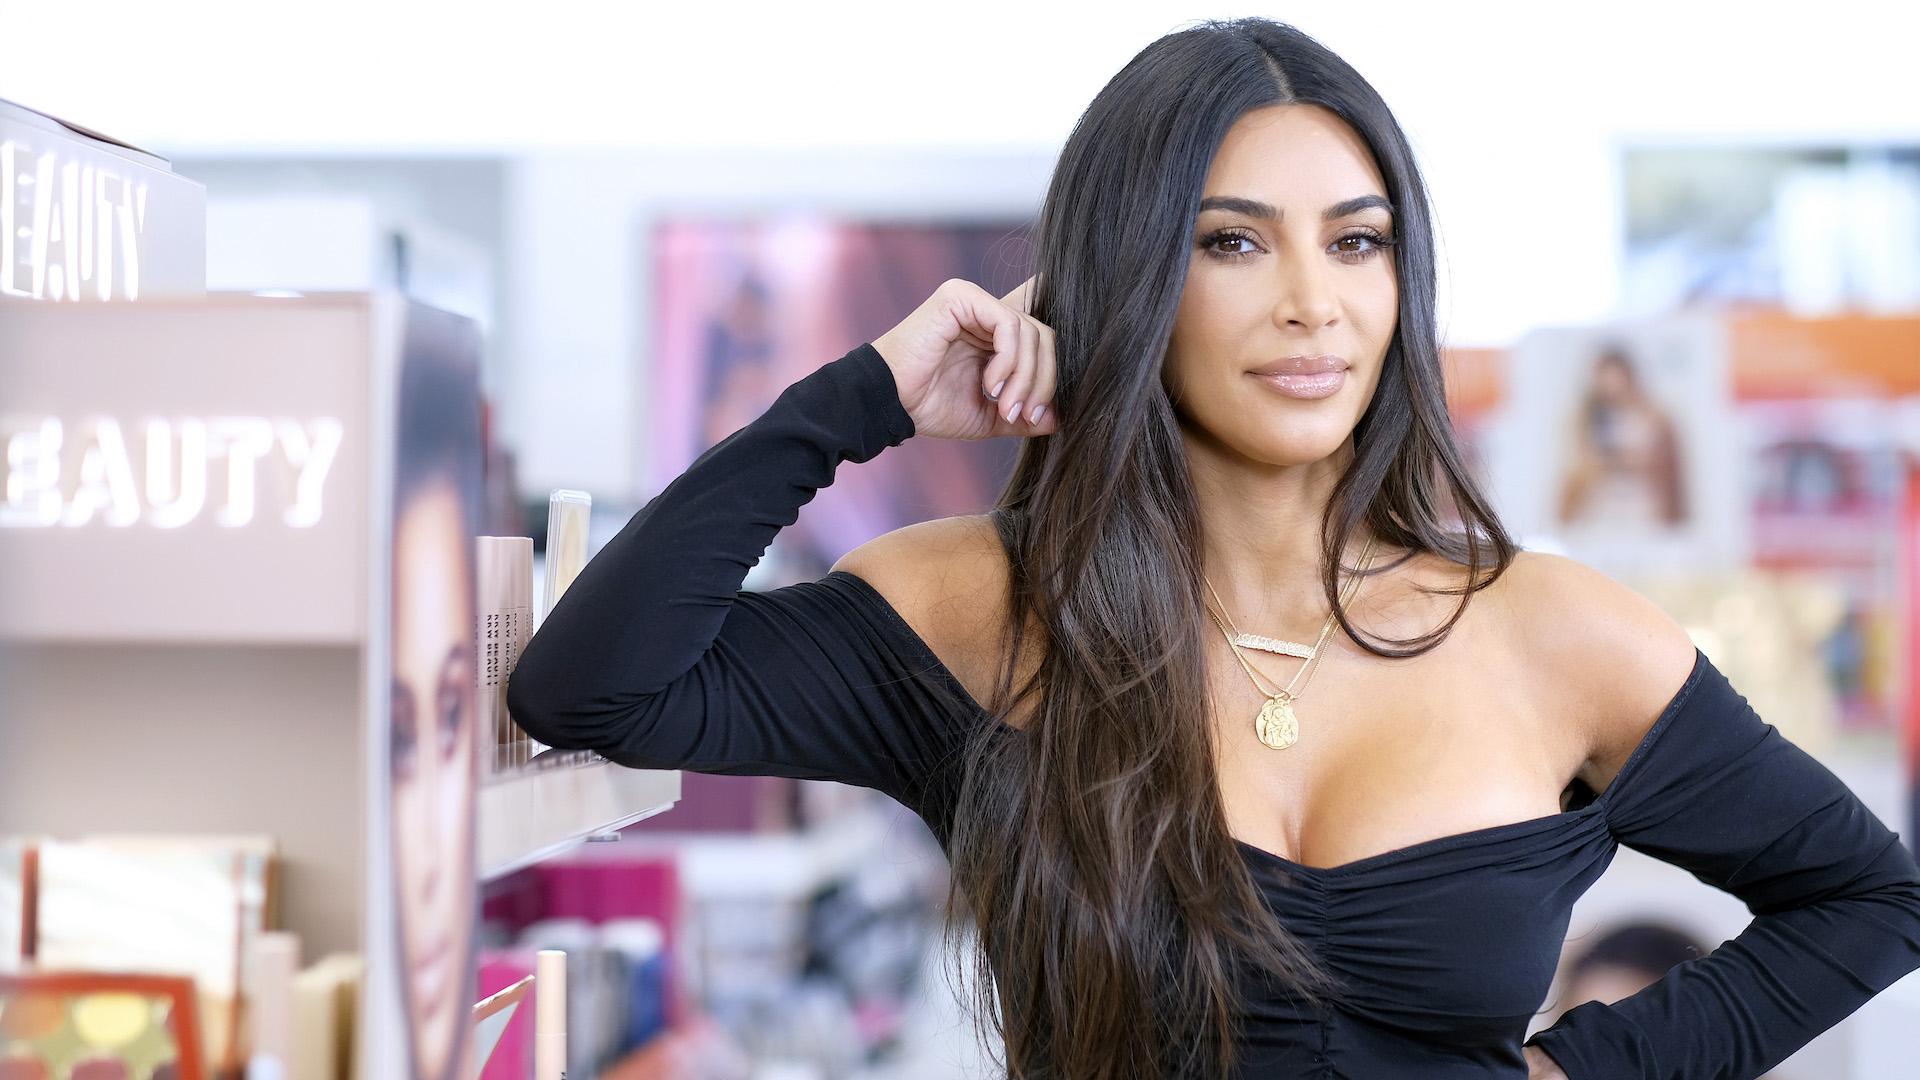 Kim Kardashian Speaks on Kanye West’s ‘Frustrating’ Tweets in New Episode of ‘KUWTK’